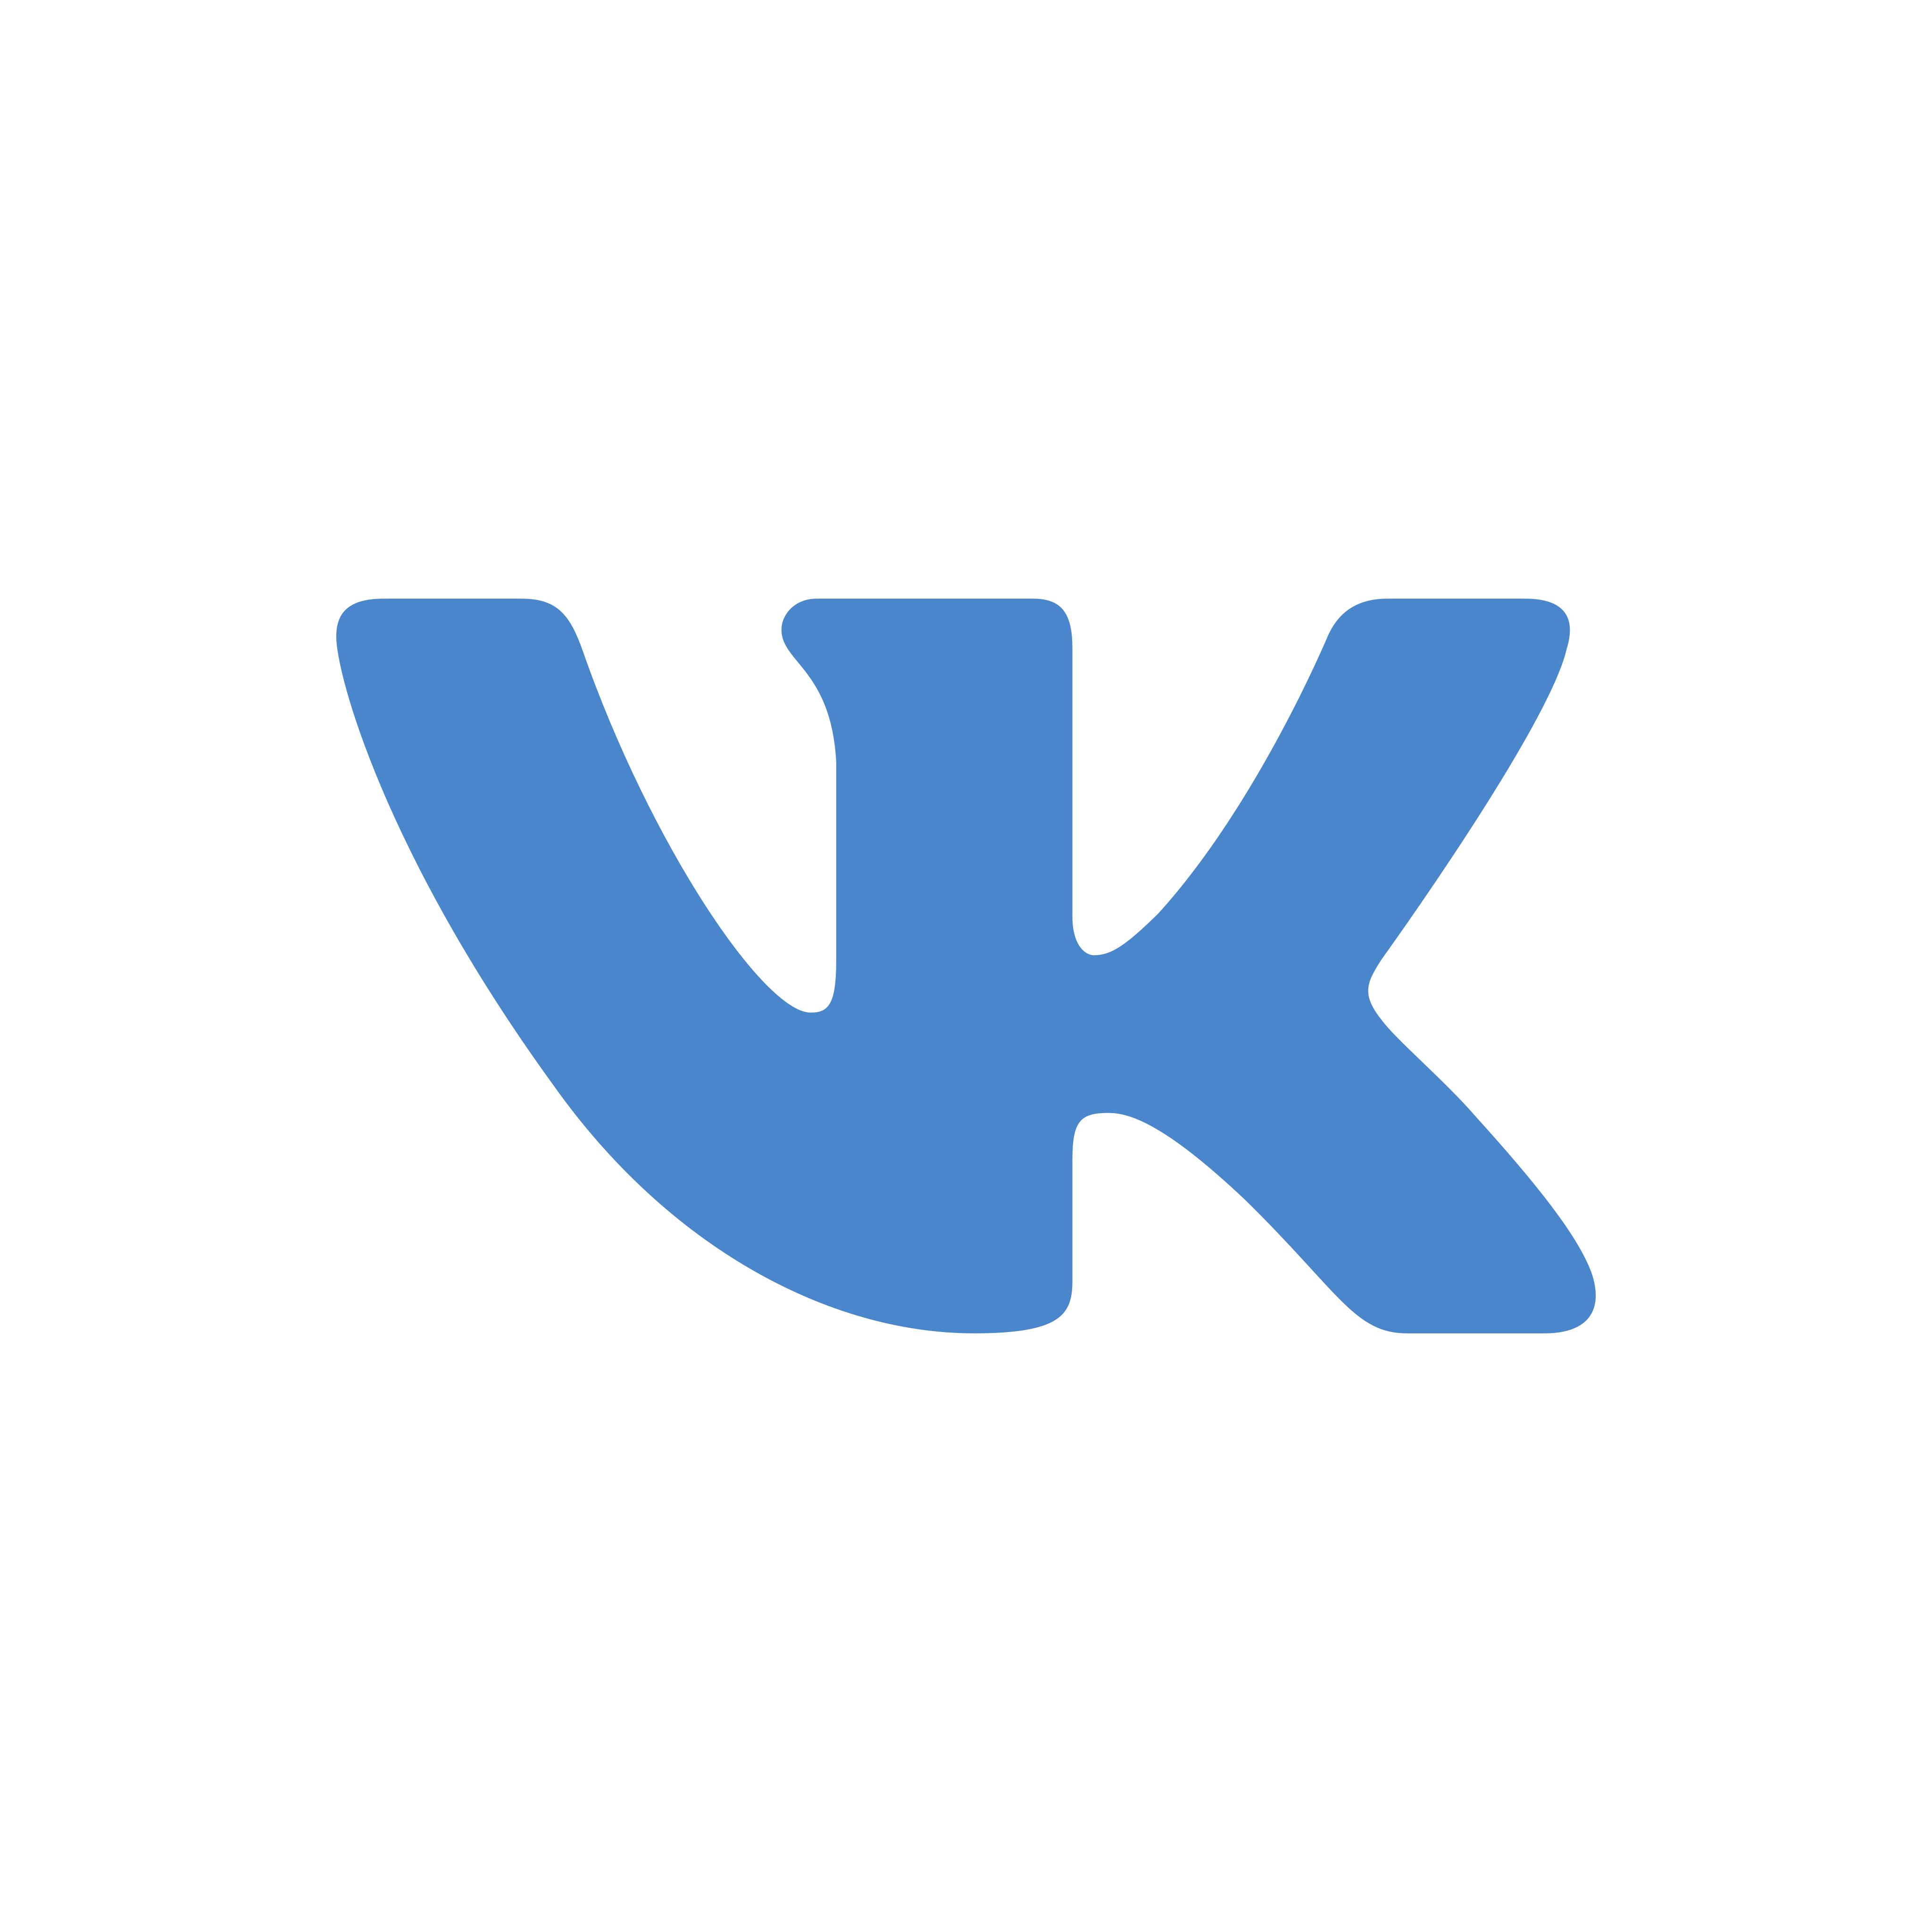 VK Logo PNG.